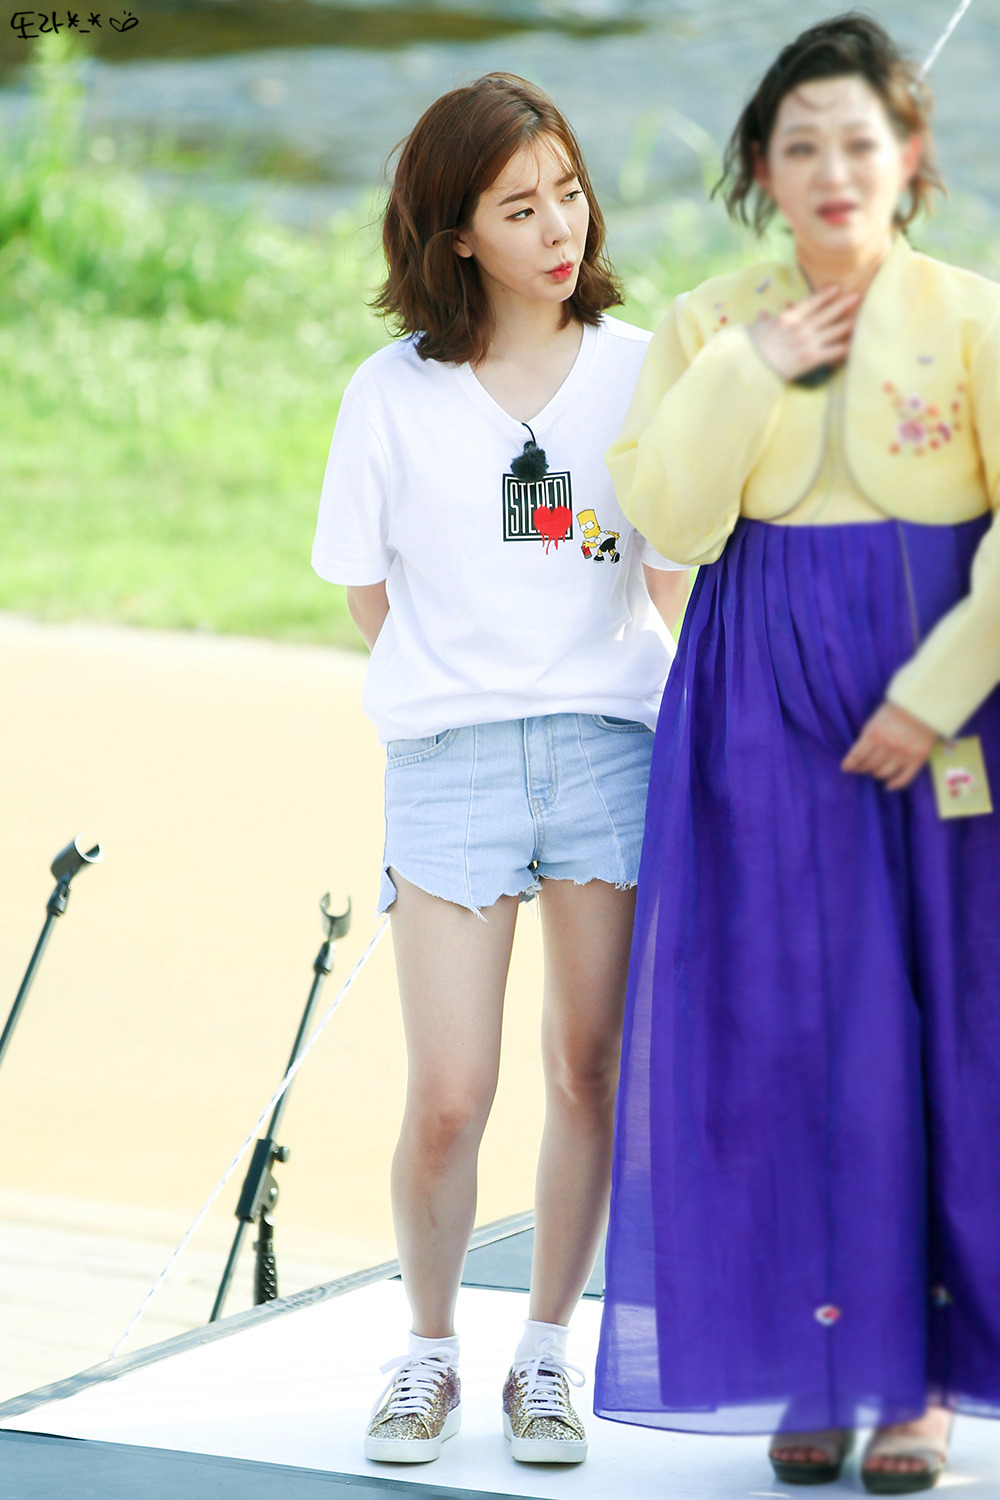 [PIC][16-05-2016]Sunny ghi hình cho chương trình "재래시장 살리자" của kênh JTBC tại Busan vào hôm nay - Page 12 2333FE415950EECC054D3E